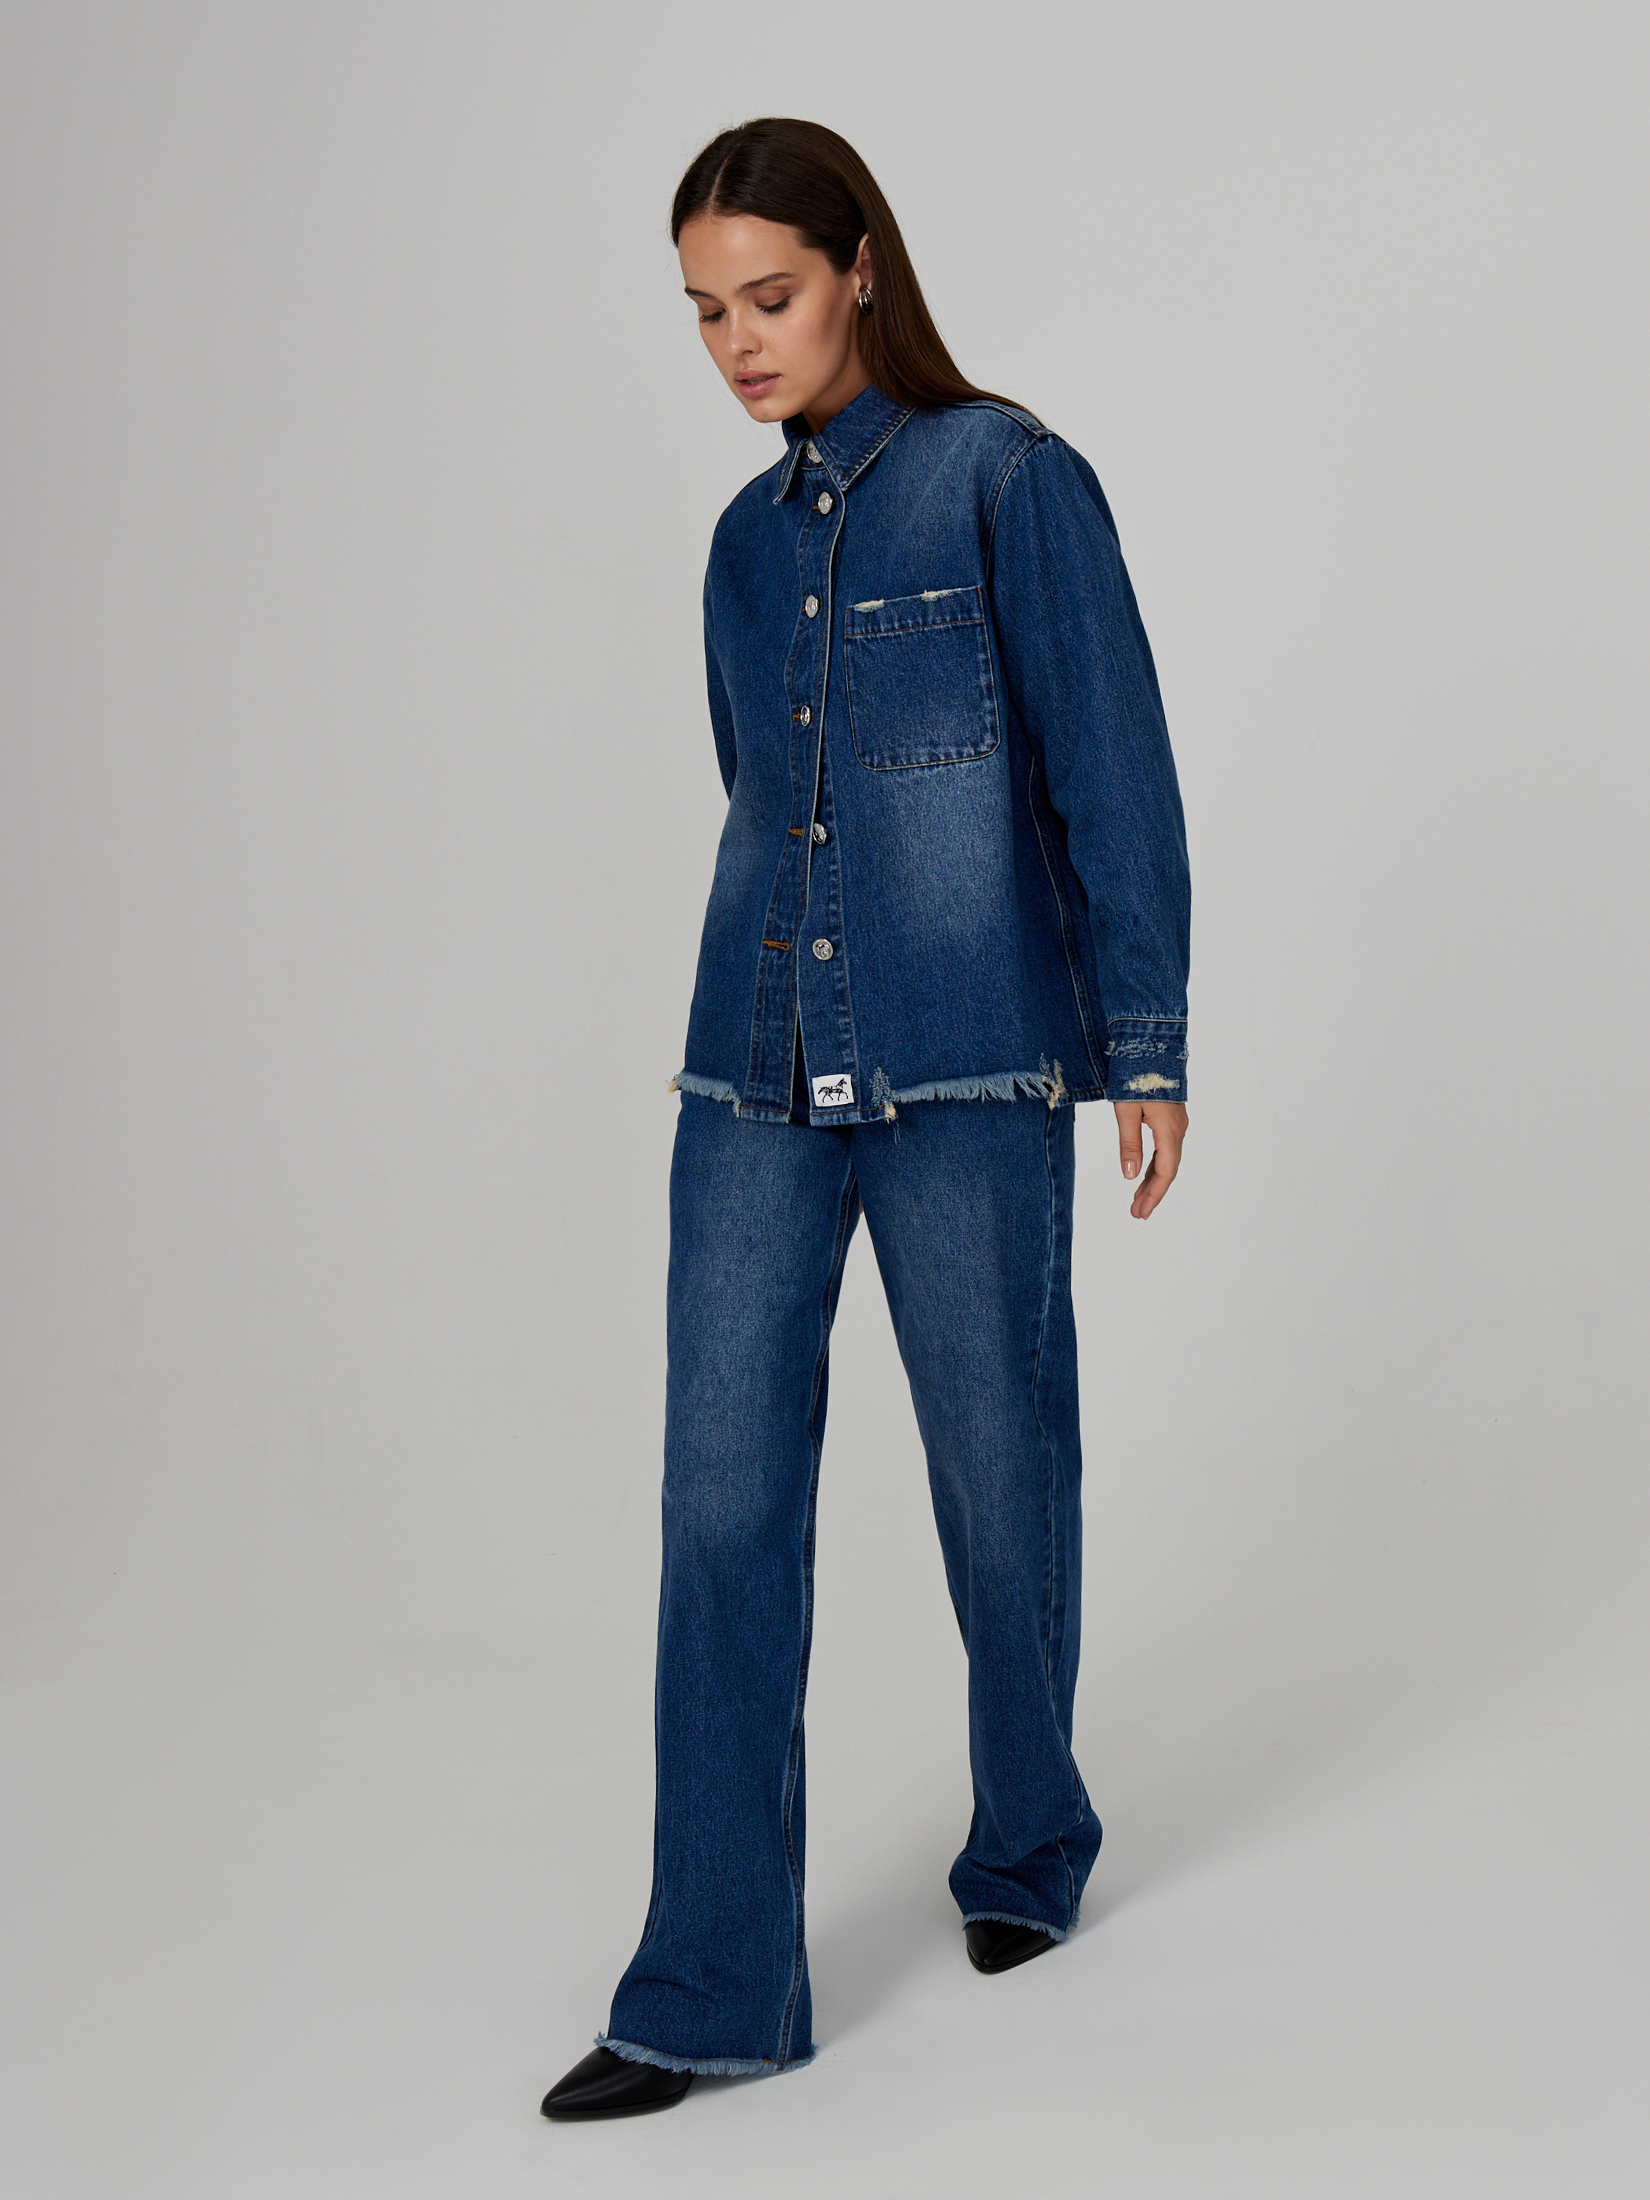 Джинсы женские темно-синие джинсы fb sister узкие 44 46 размер